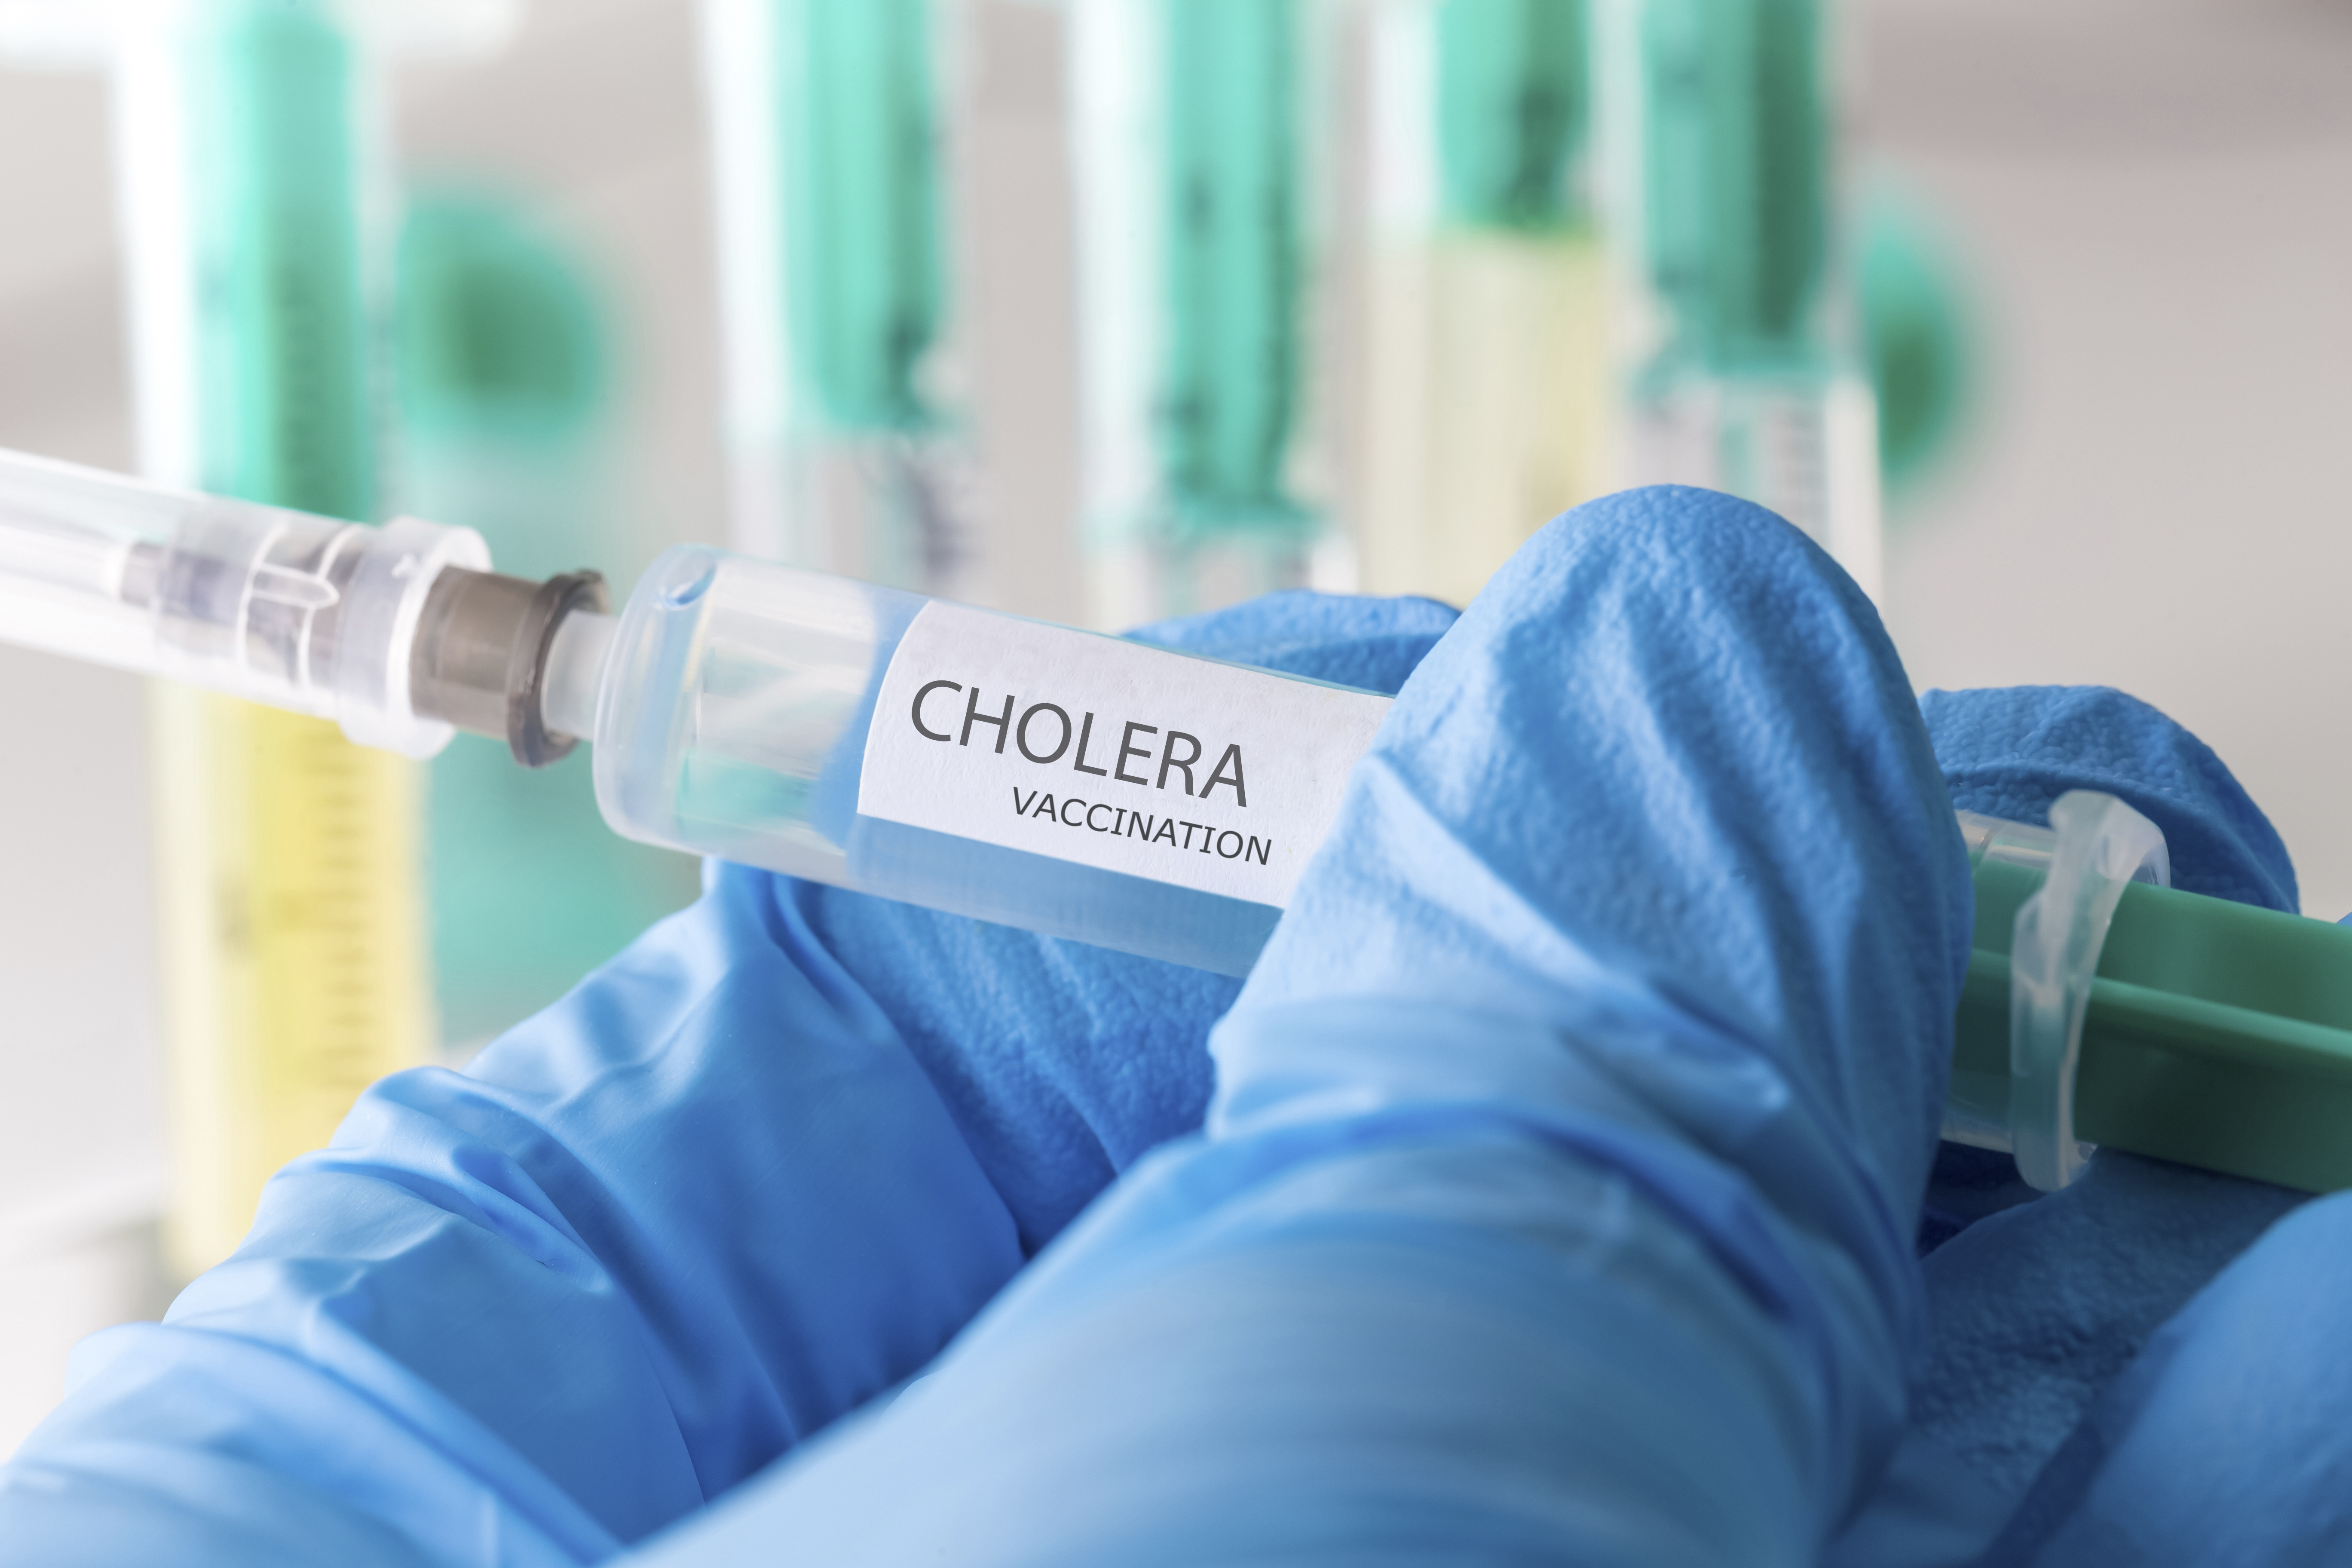     En République Dominicaine, la lutte contre le choléra passe par la vaccination

